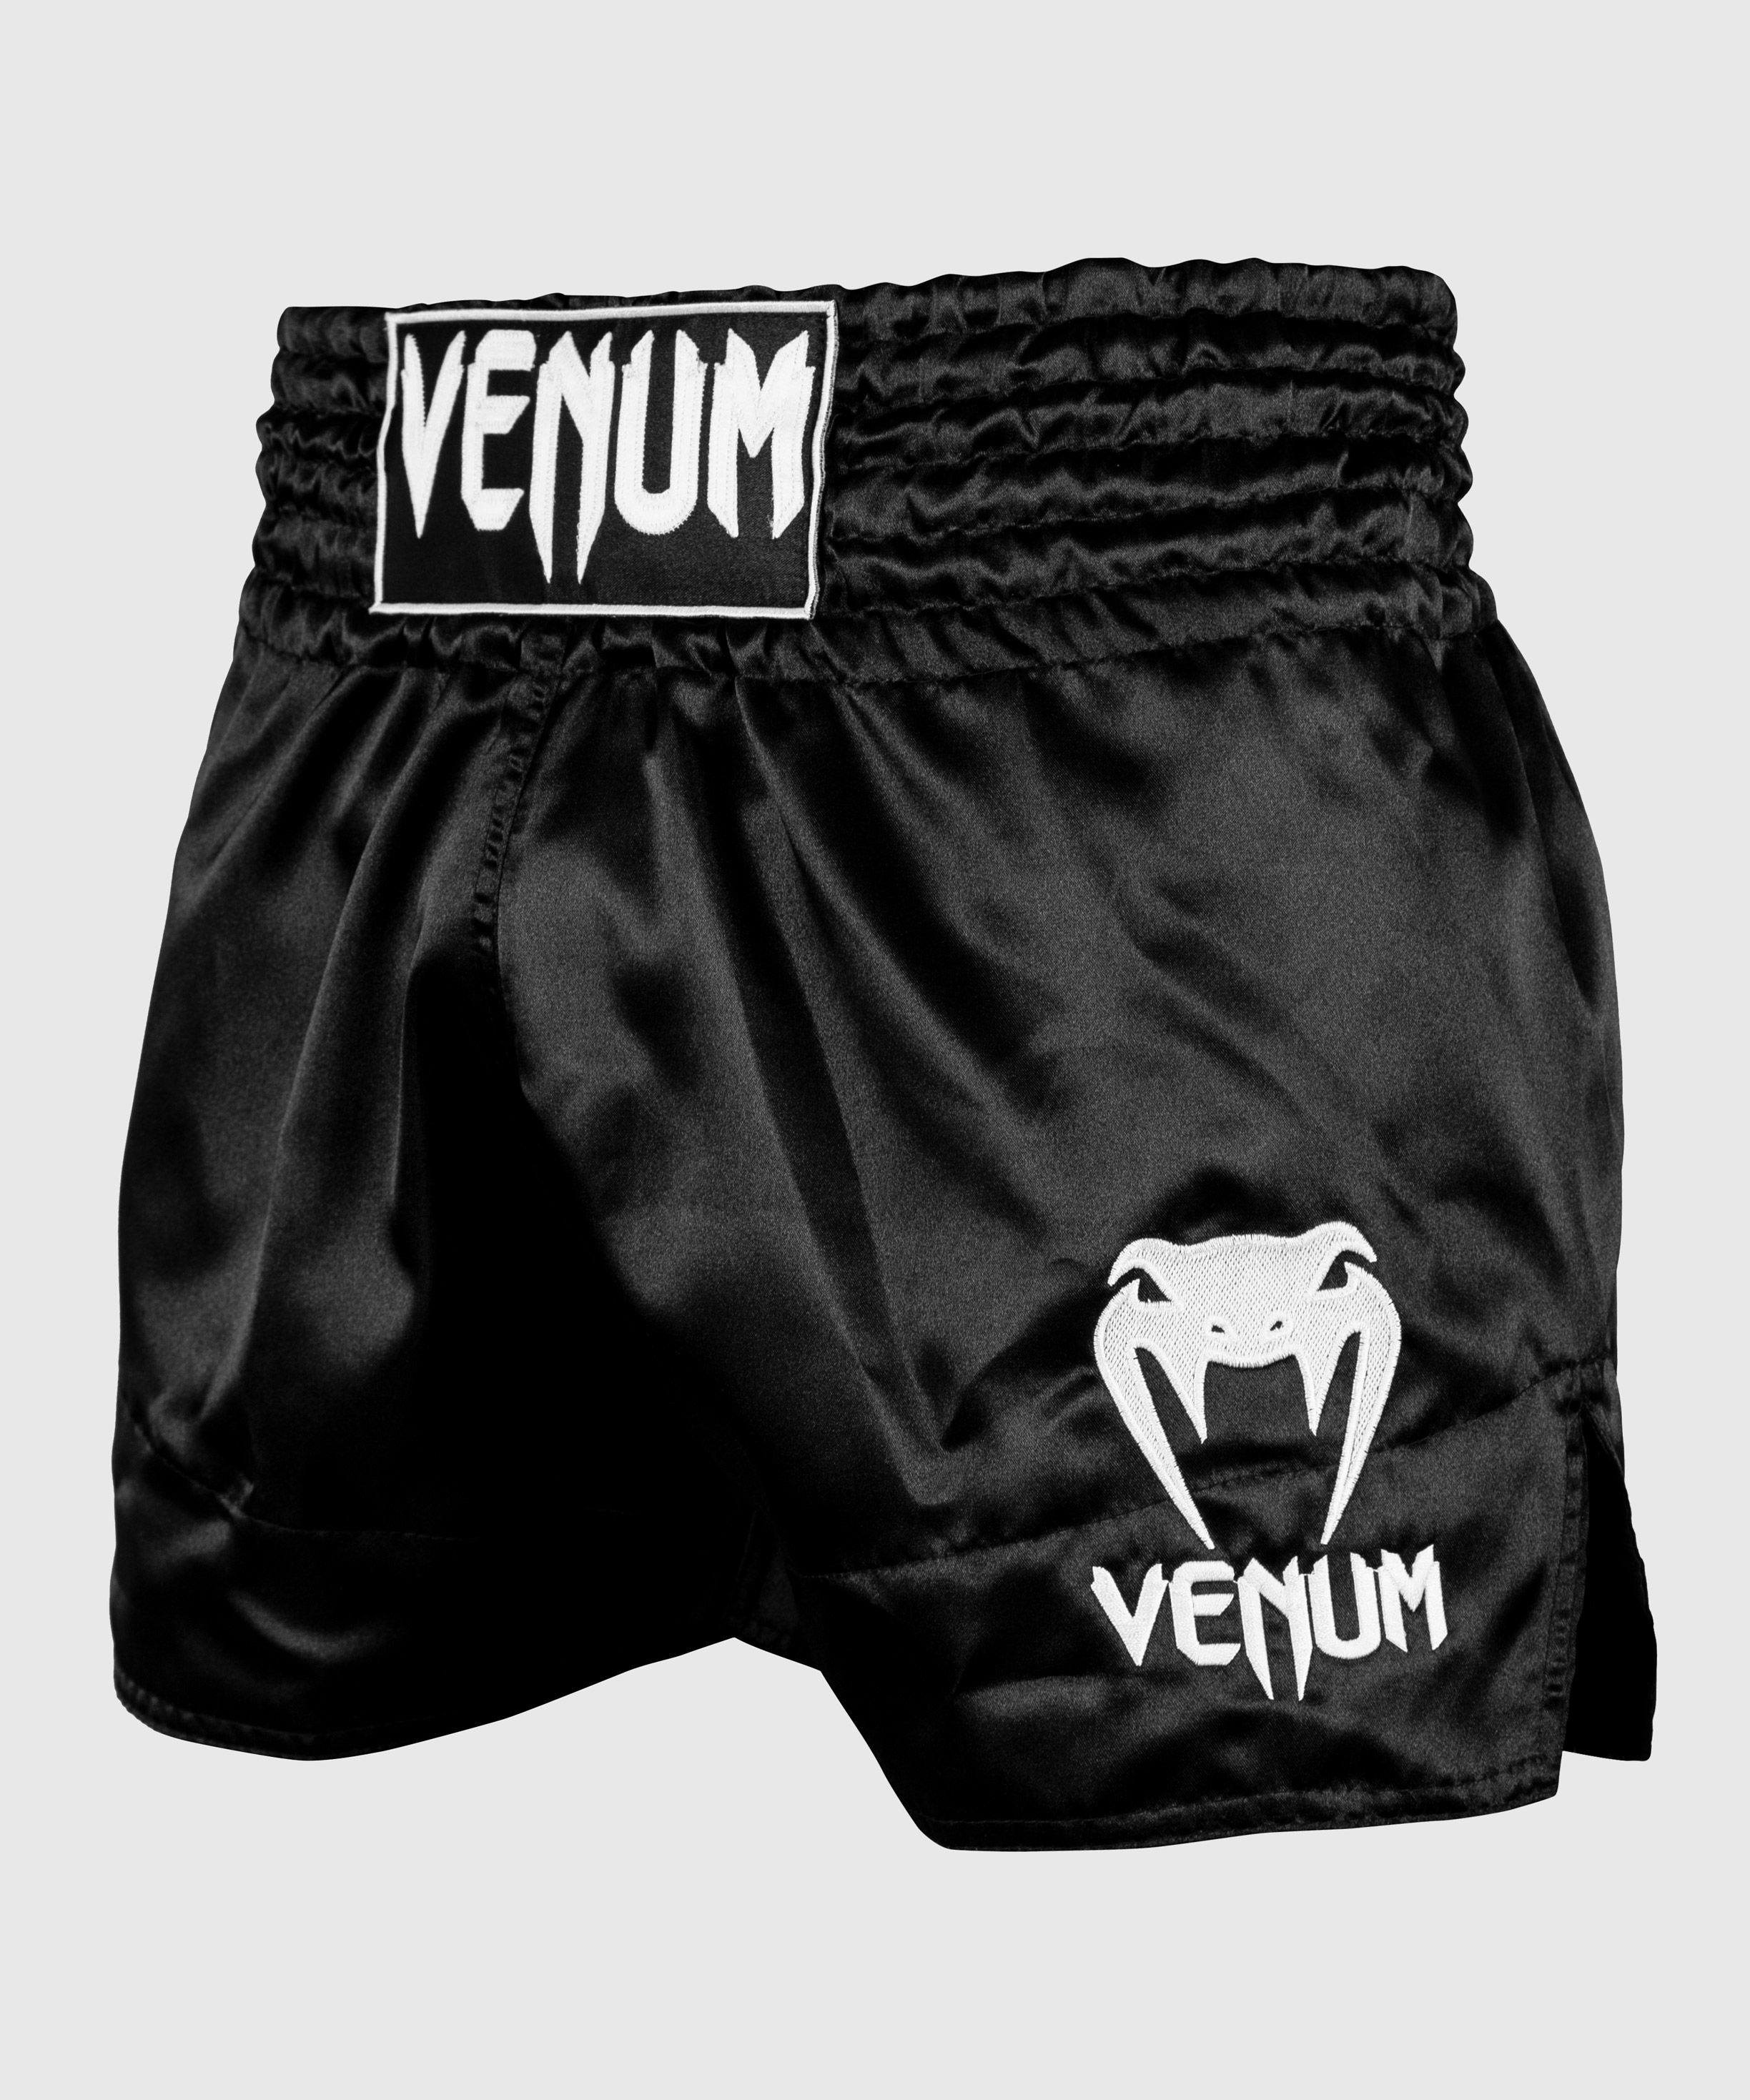 doble Devorar Íncubo Short de Muay Thai Venum Classic - Negro/Blanco - Venum.com España